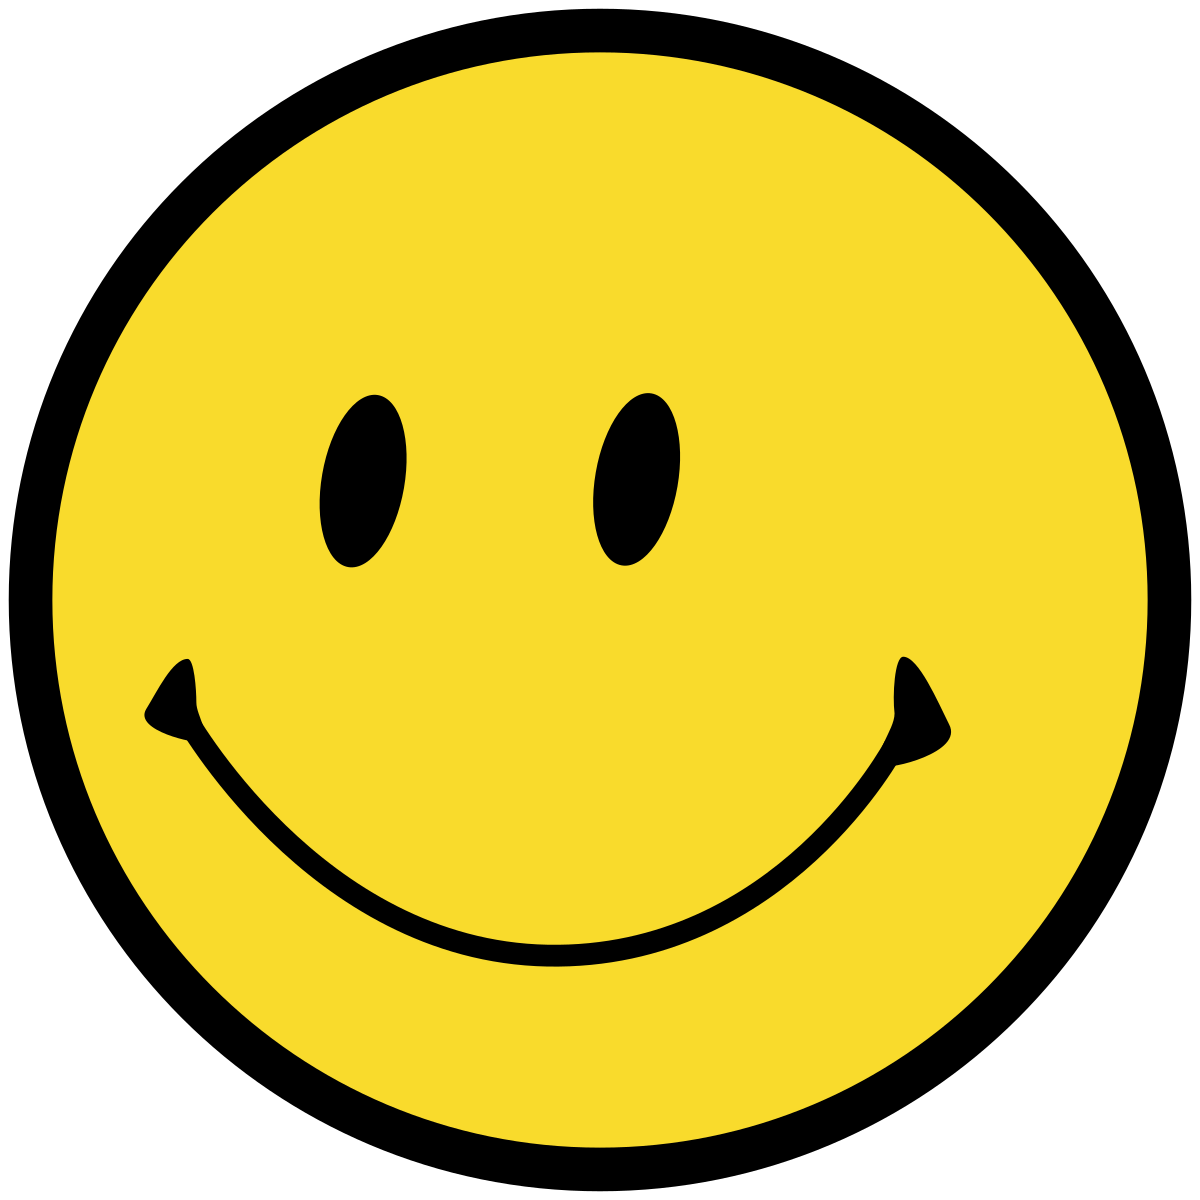 Image Of A Smiley Face - KibrisPDR